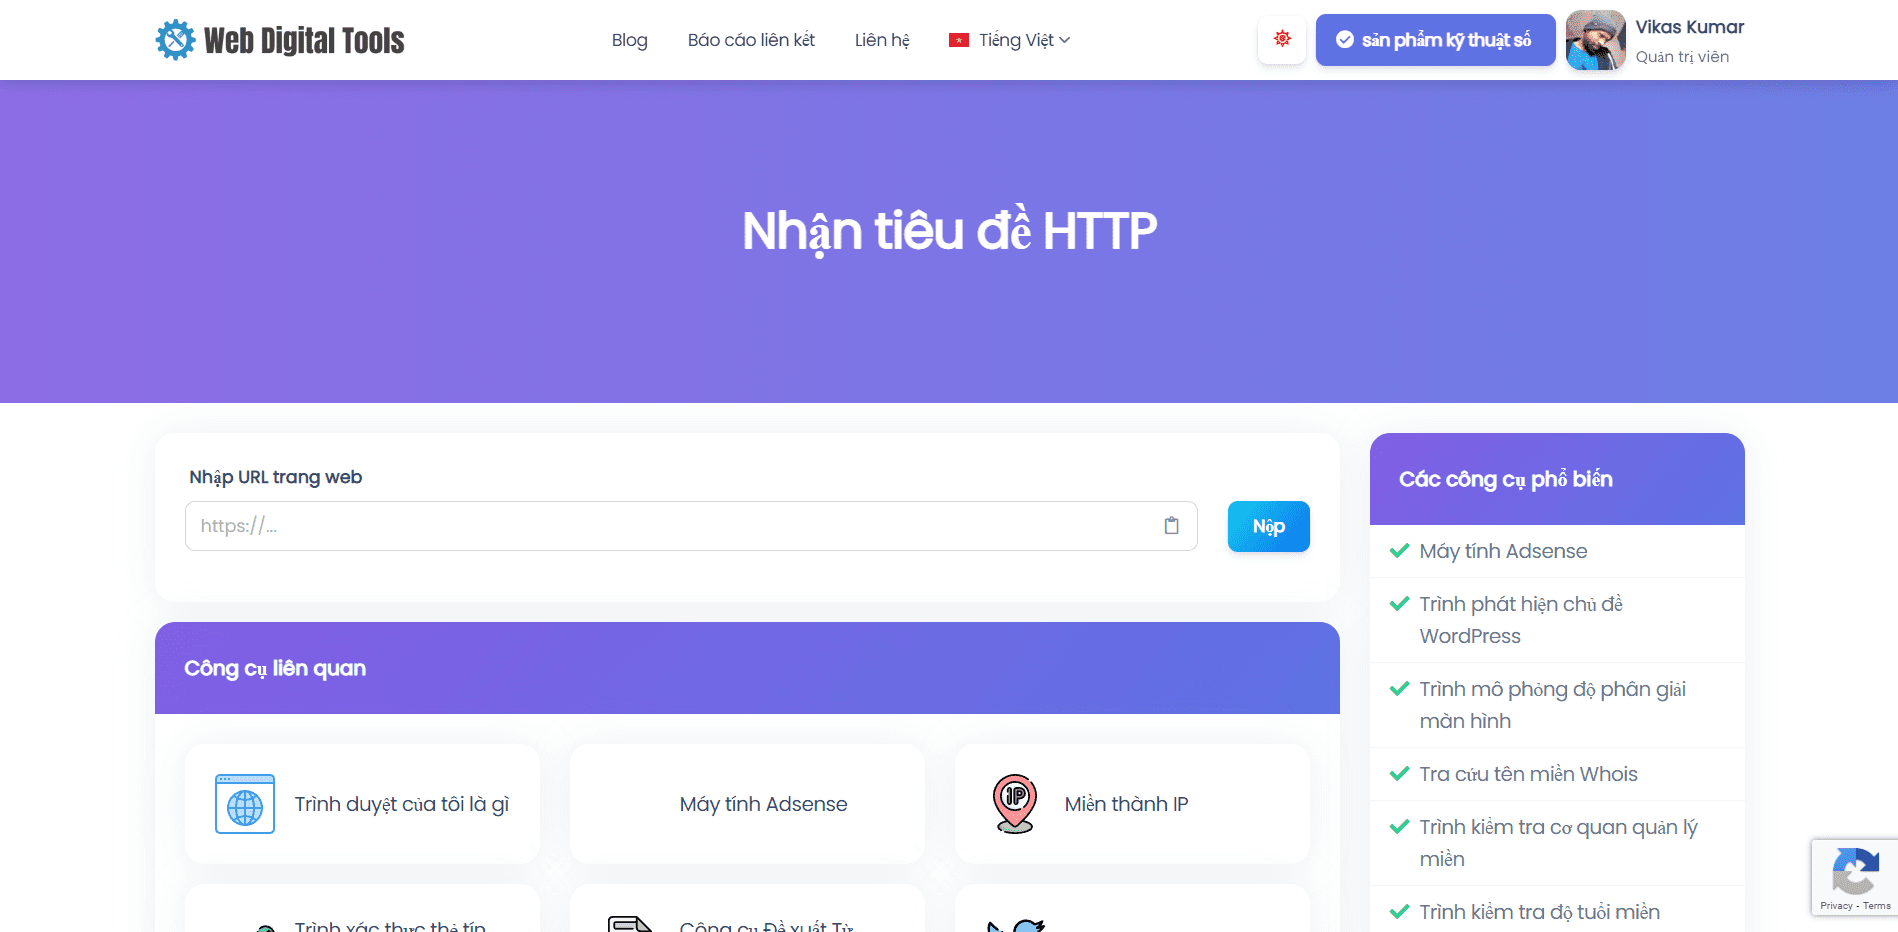 Nhận tiêu đề HTTP